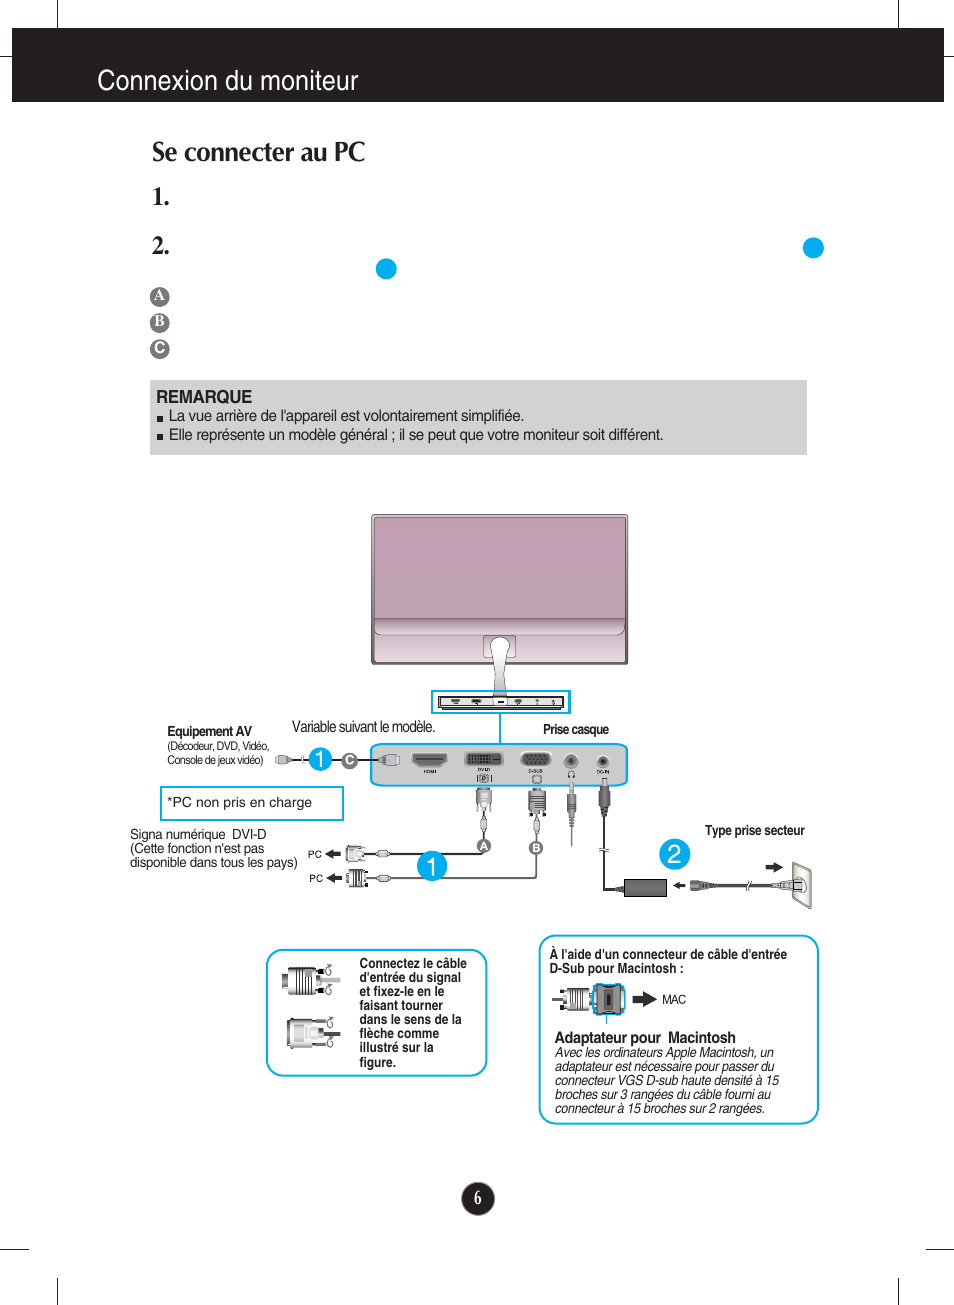 Se connecter au pc, Connexion du moniteur se connecter au pc | LG E2290V-SN Manuel d'utilisation | Page 7 / 26